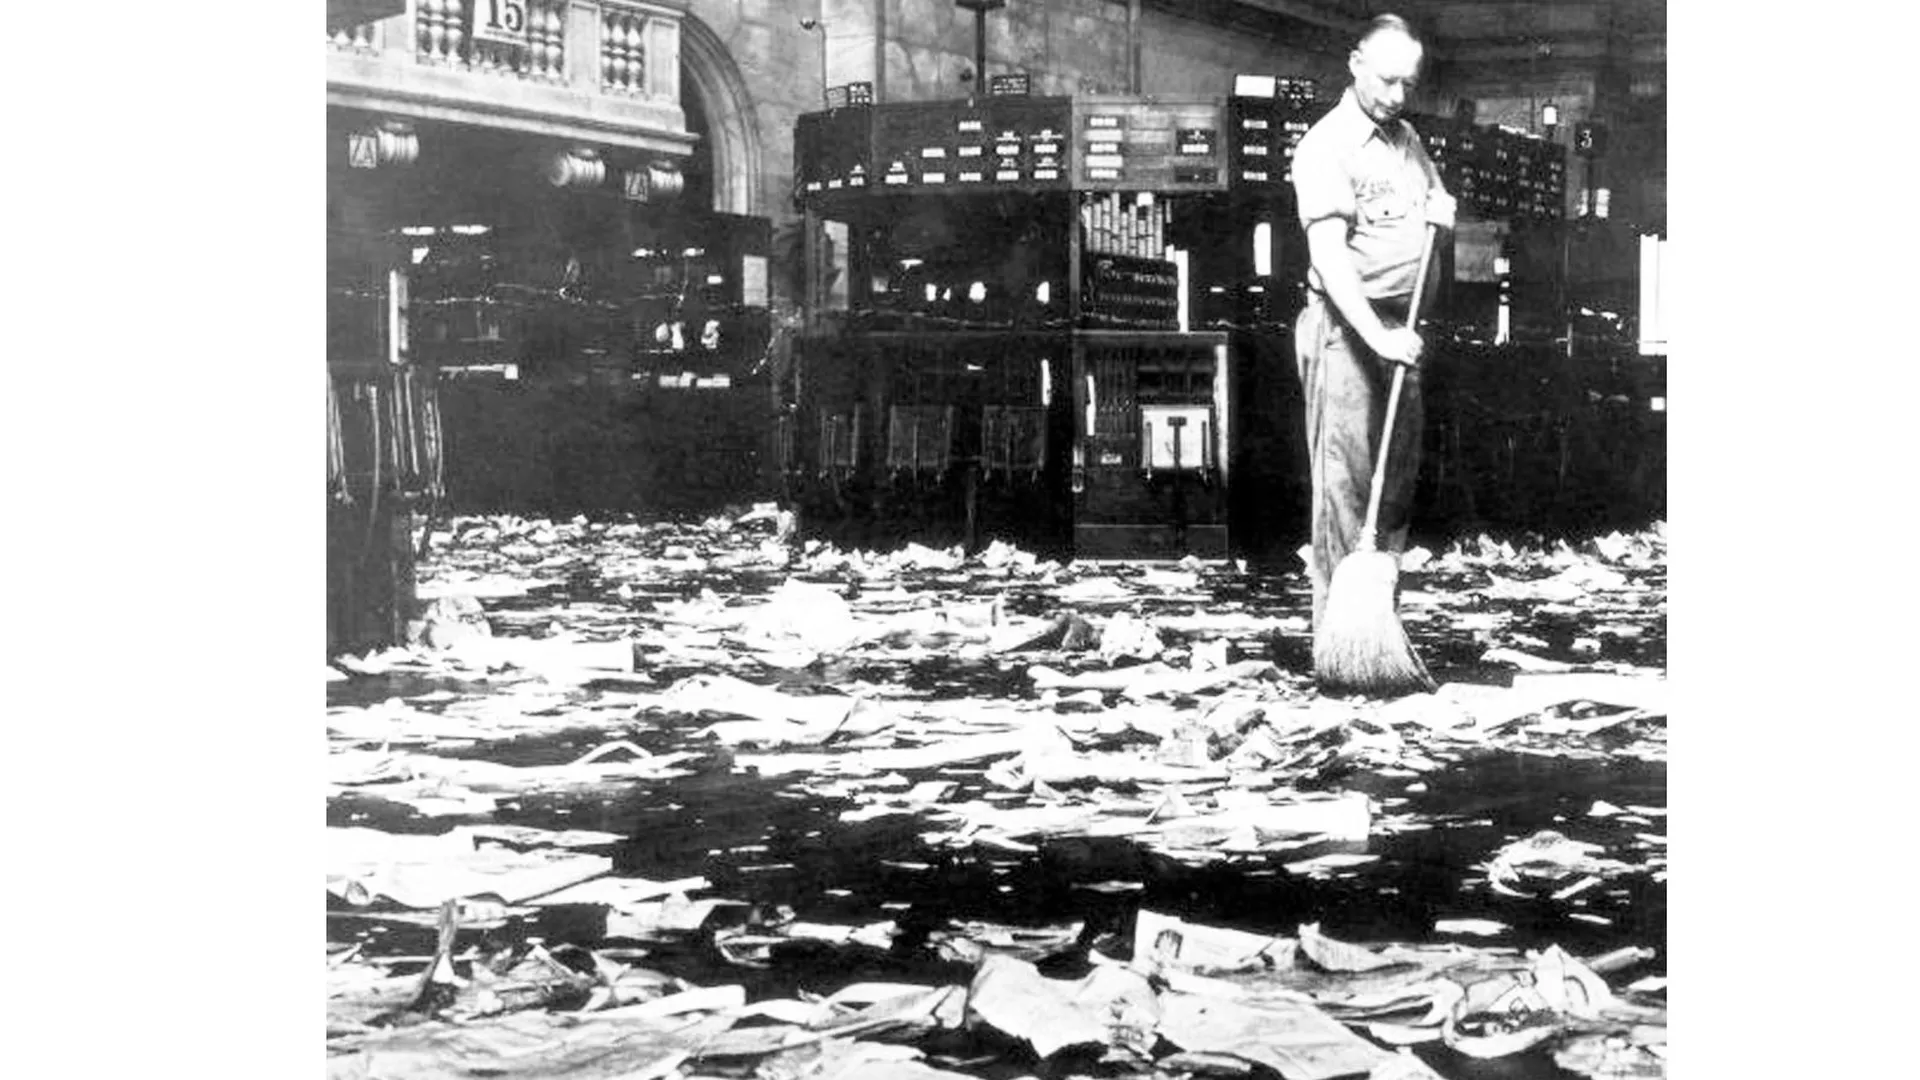 Начало Великой депрессии: уборщик сметает акции, которые превратились в мусор. США, 1929 год